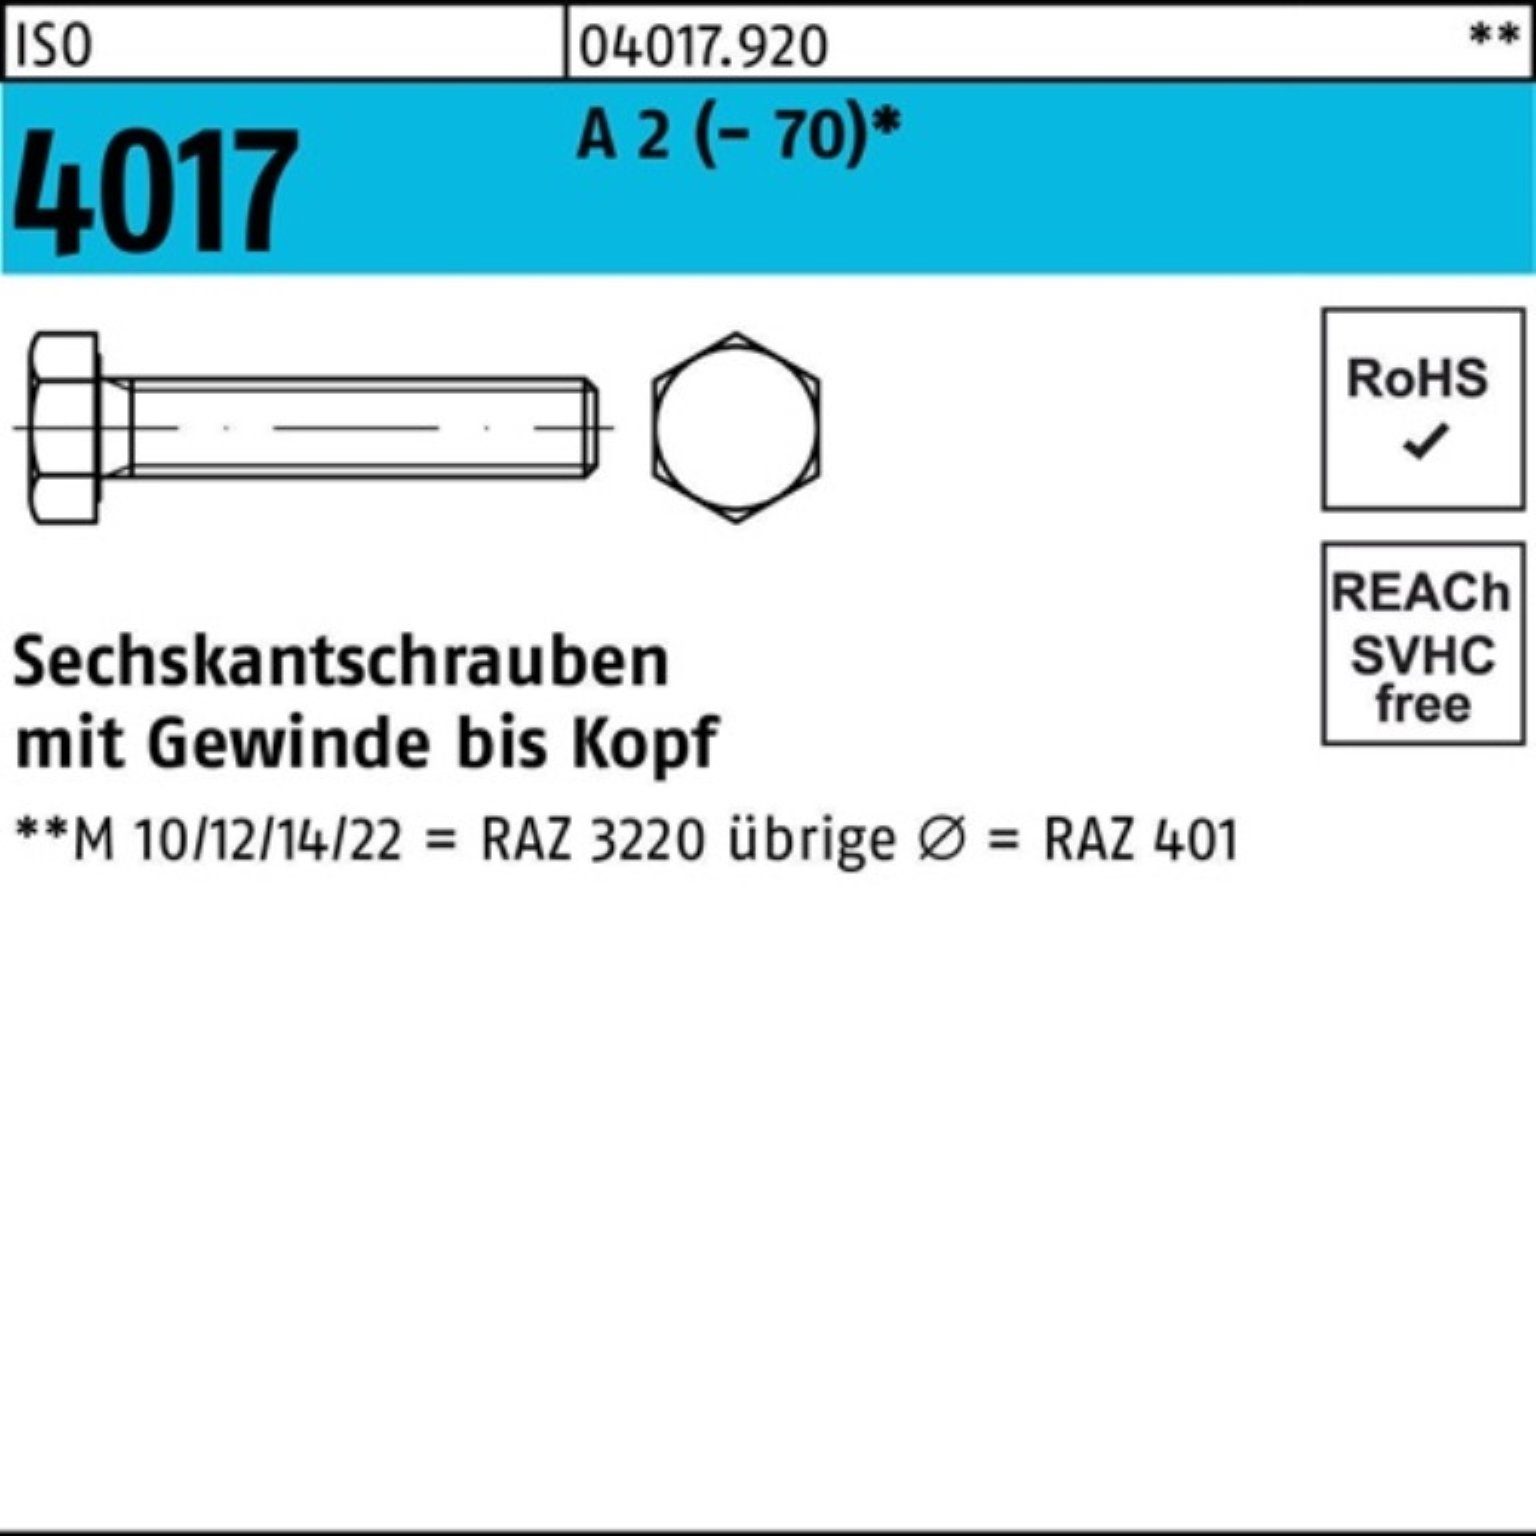 Bufab Sechskantschraube 100er ISO Sechskantschraube A Pack 1 VG M24x 4017 2 (70) 180 Stück